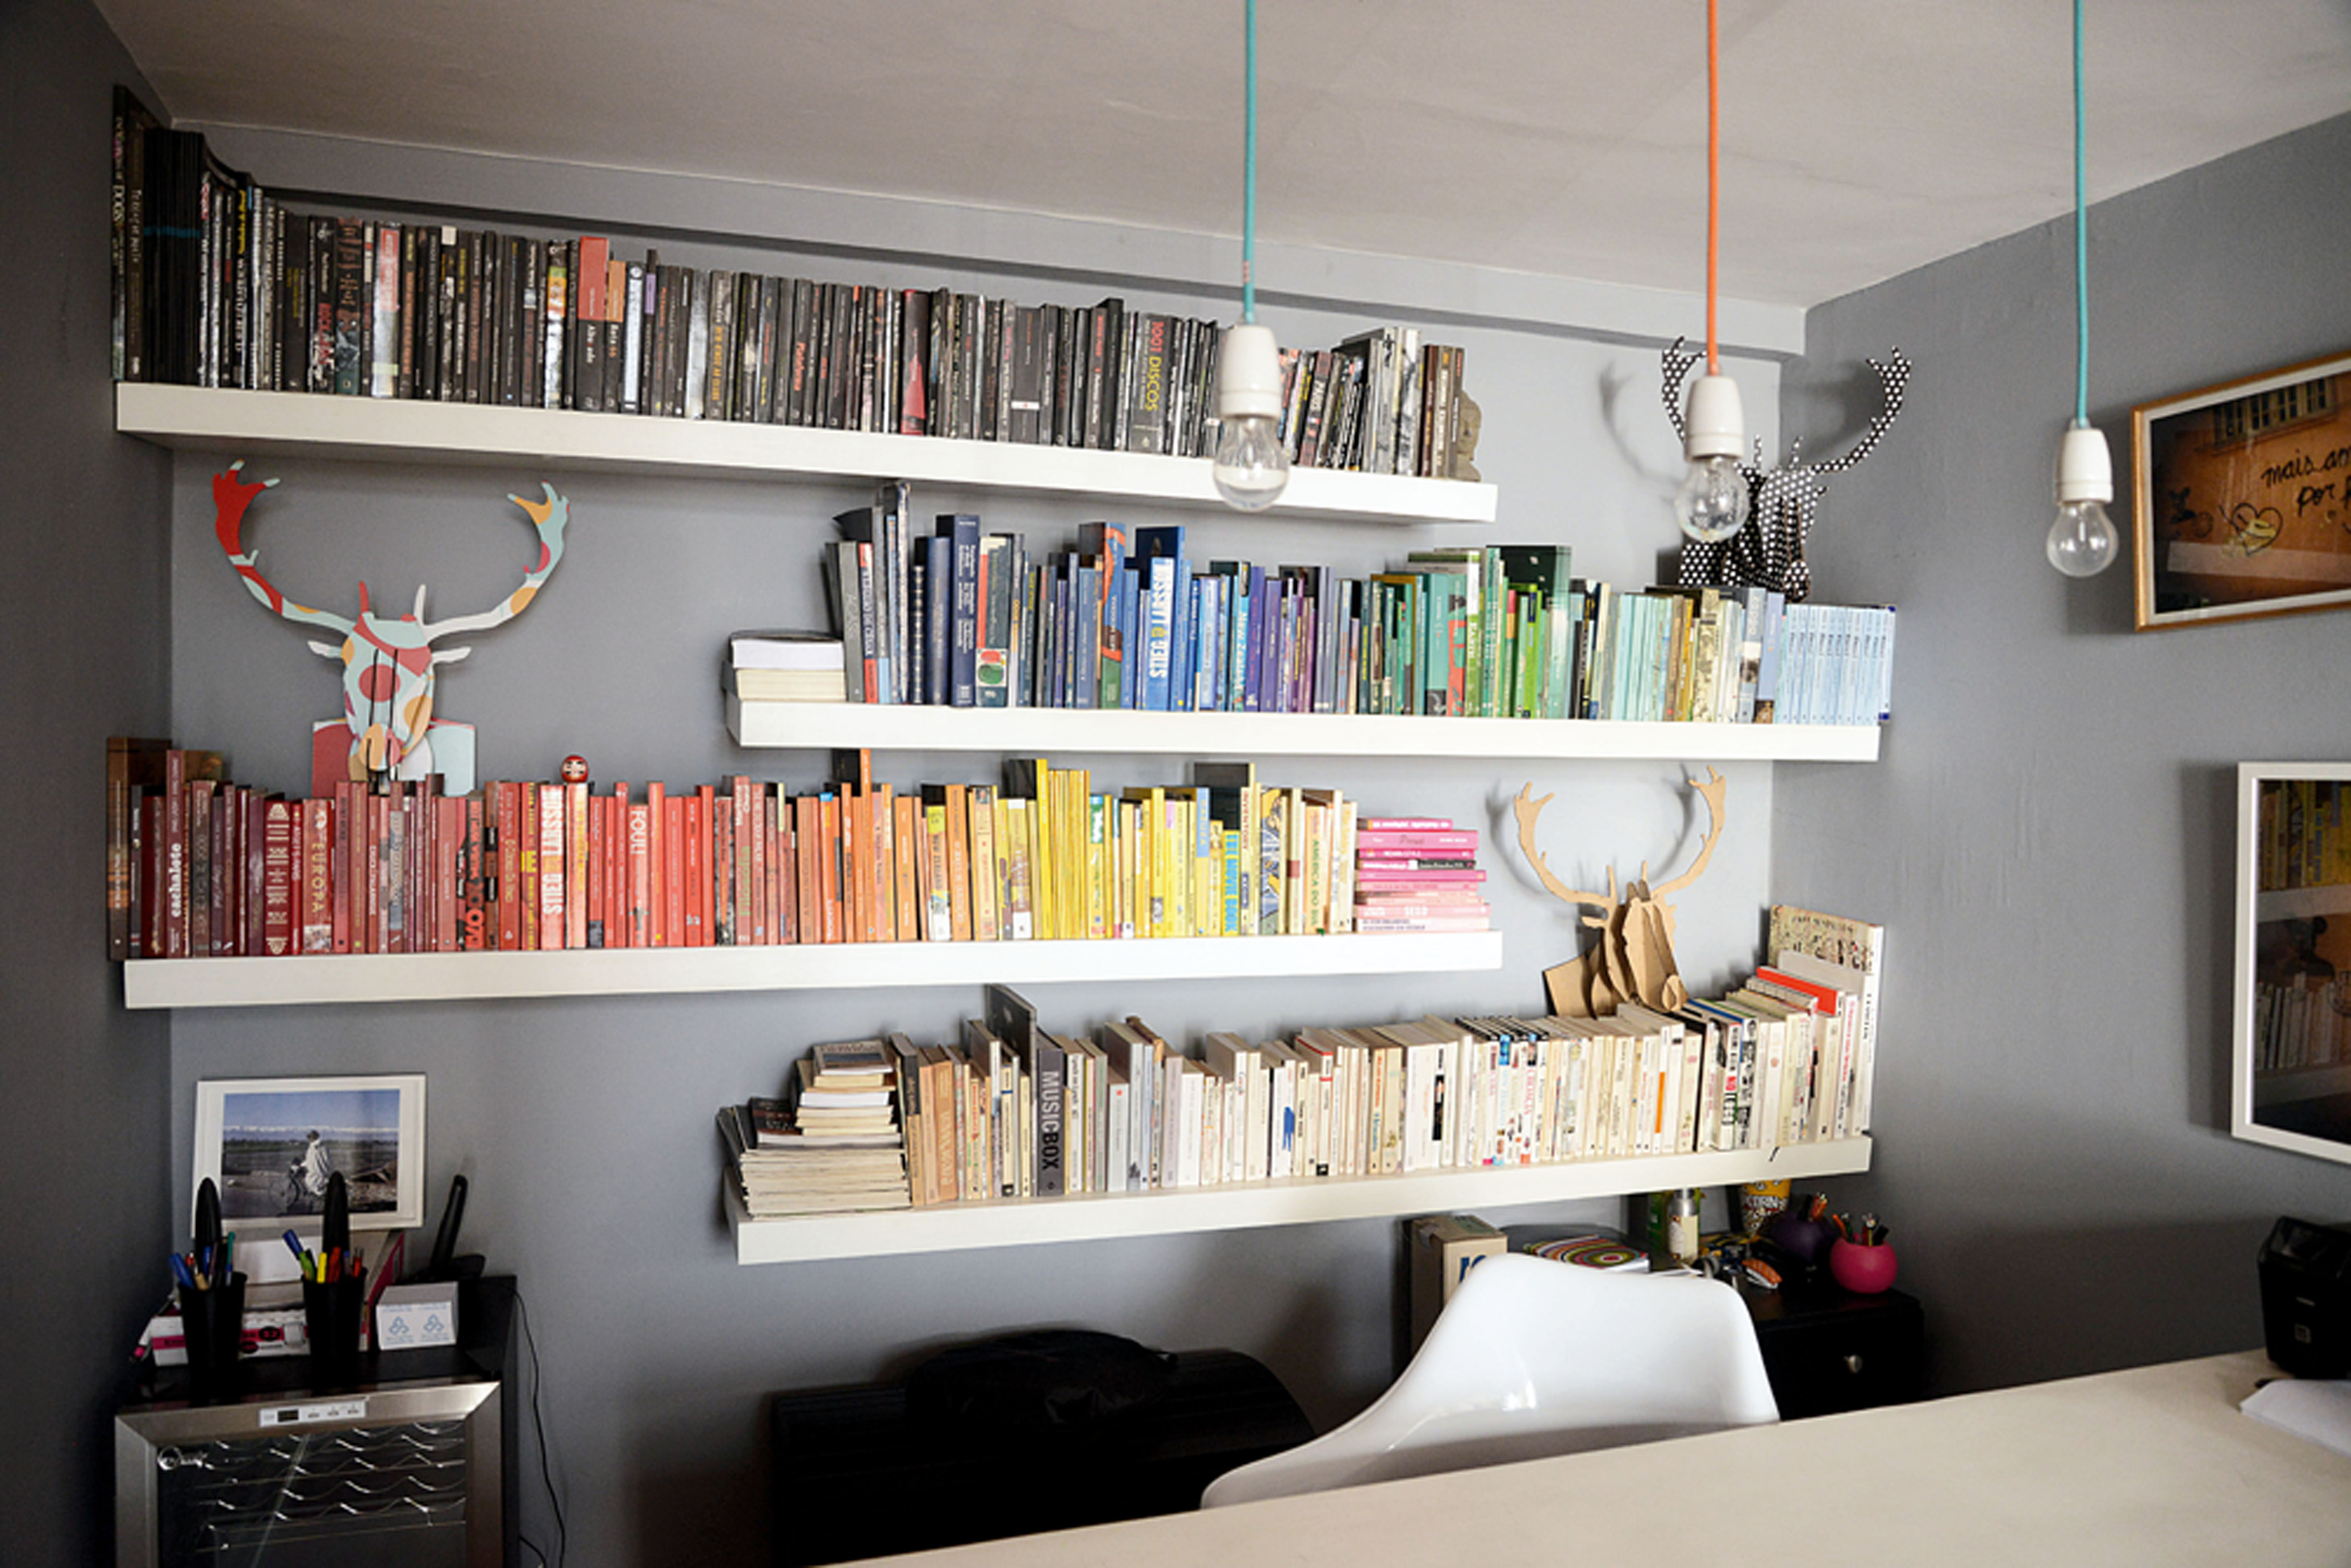 Rainbow: Mariana organizou os livros do escritório por cores, para que se destacassem ainda mais sobre a parede cinza